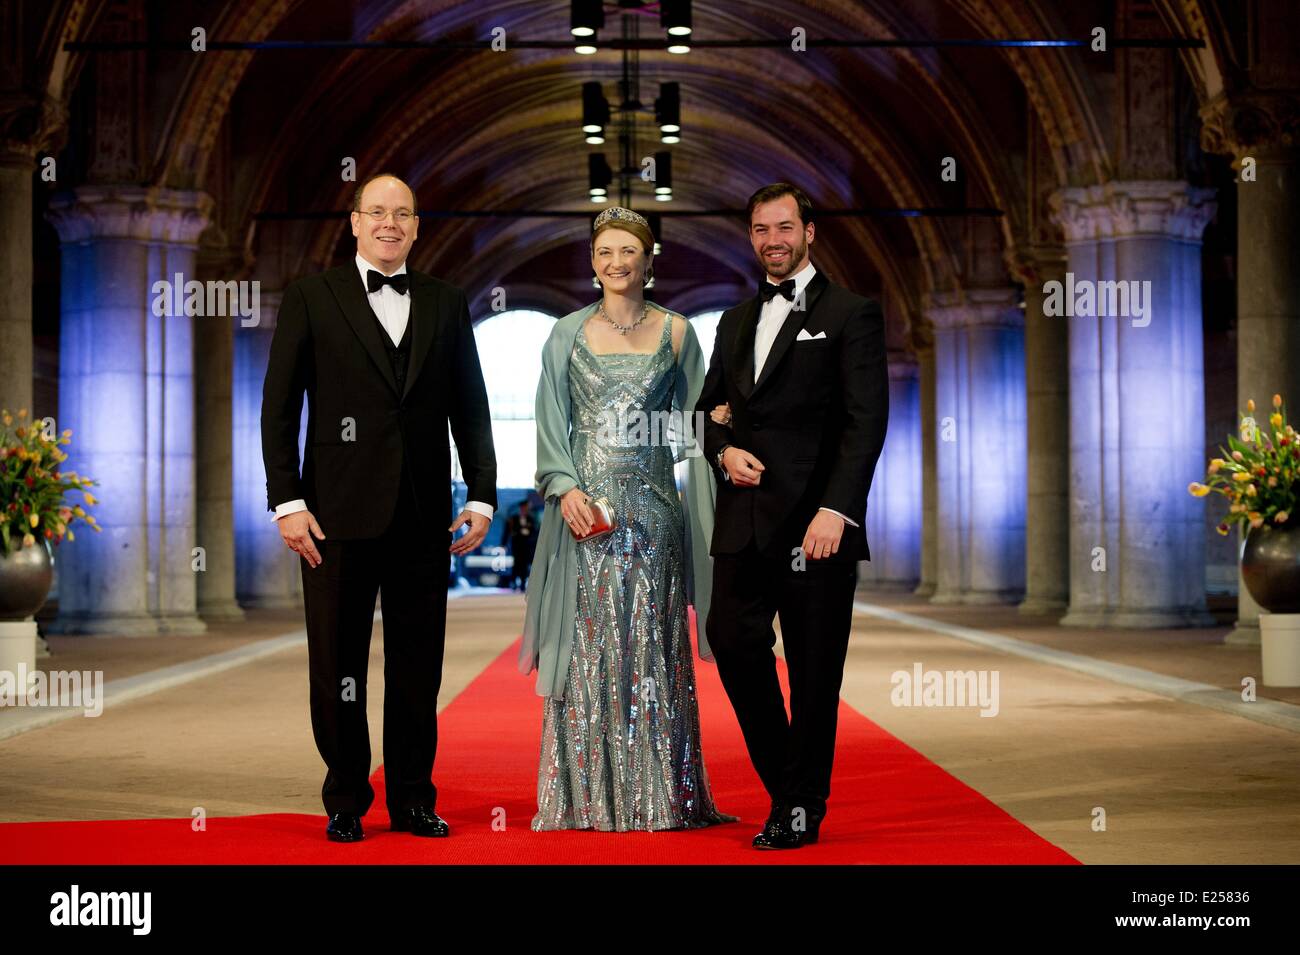 La Reine Beatrix des Pays-Bas organise un dîner de gala en avant de son abdication Où : Amsterdam, Pays-Bas Quand : 29 Avr 2013 Cr Banque D'Images